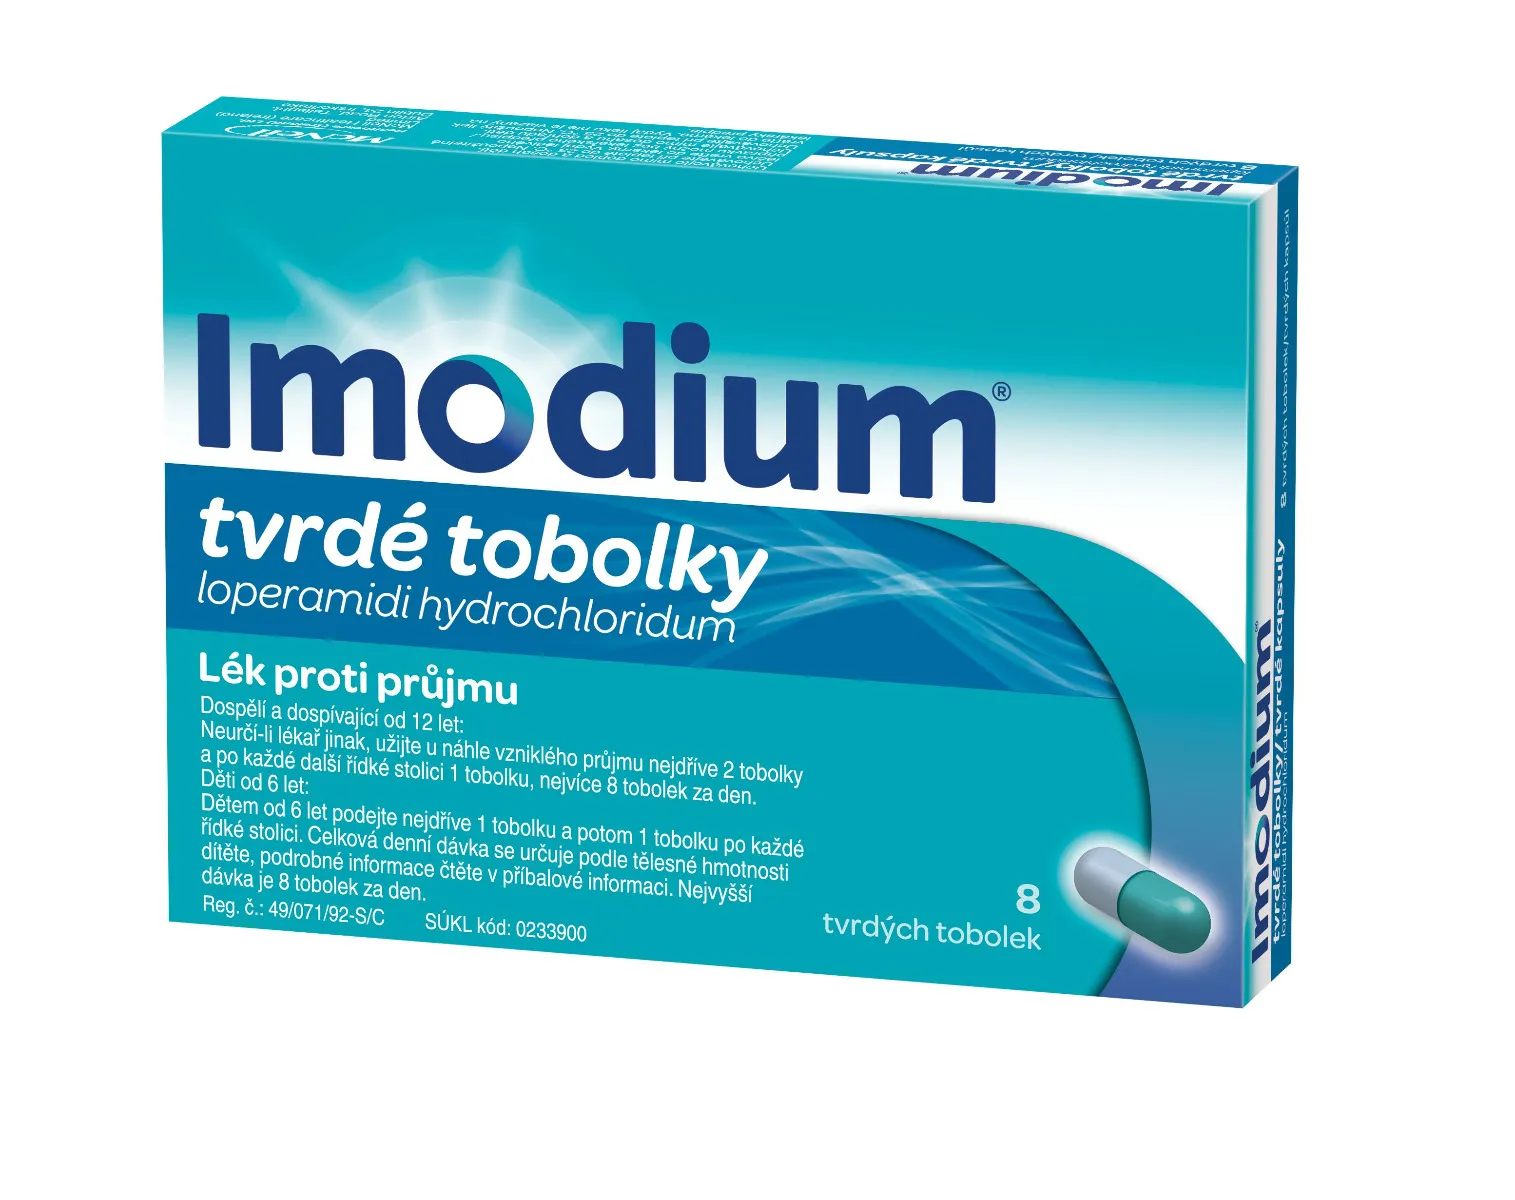 Imodium 2 mg 8 tobolek